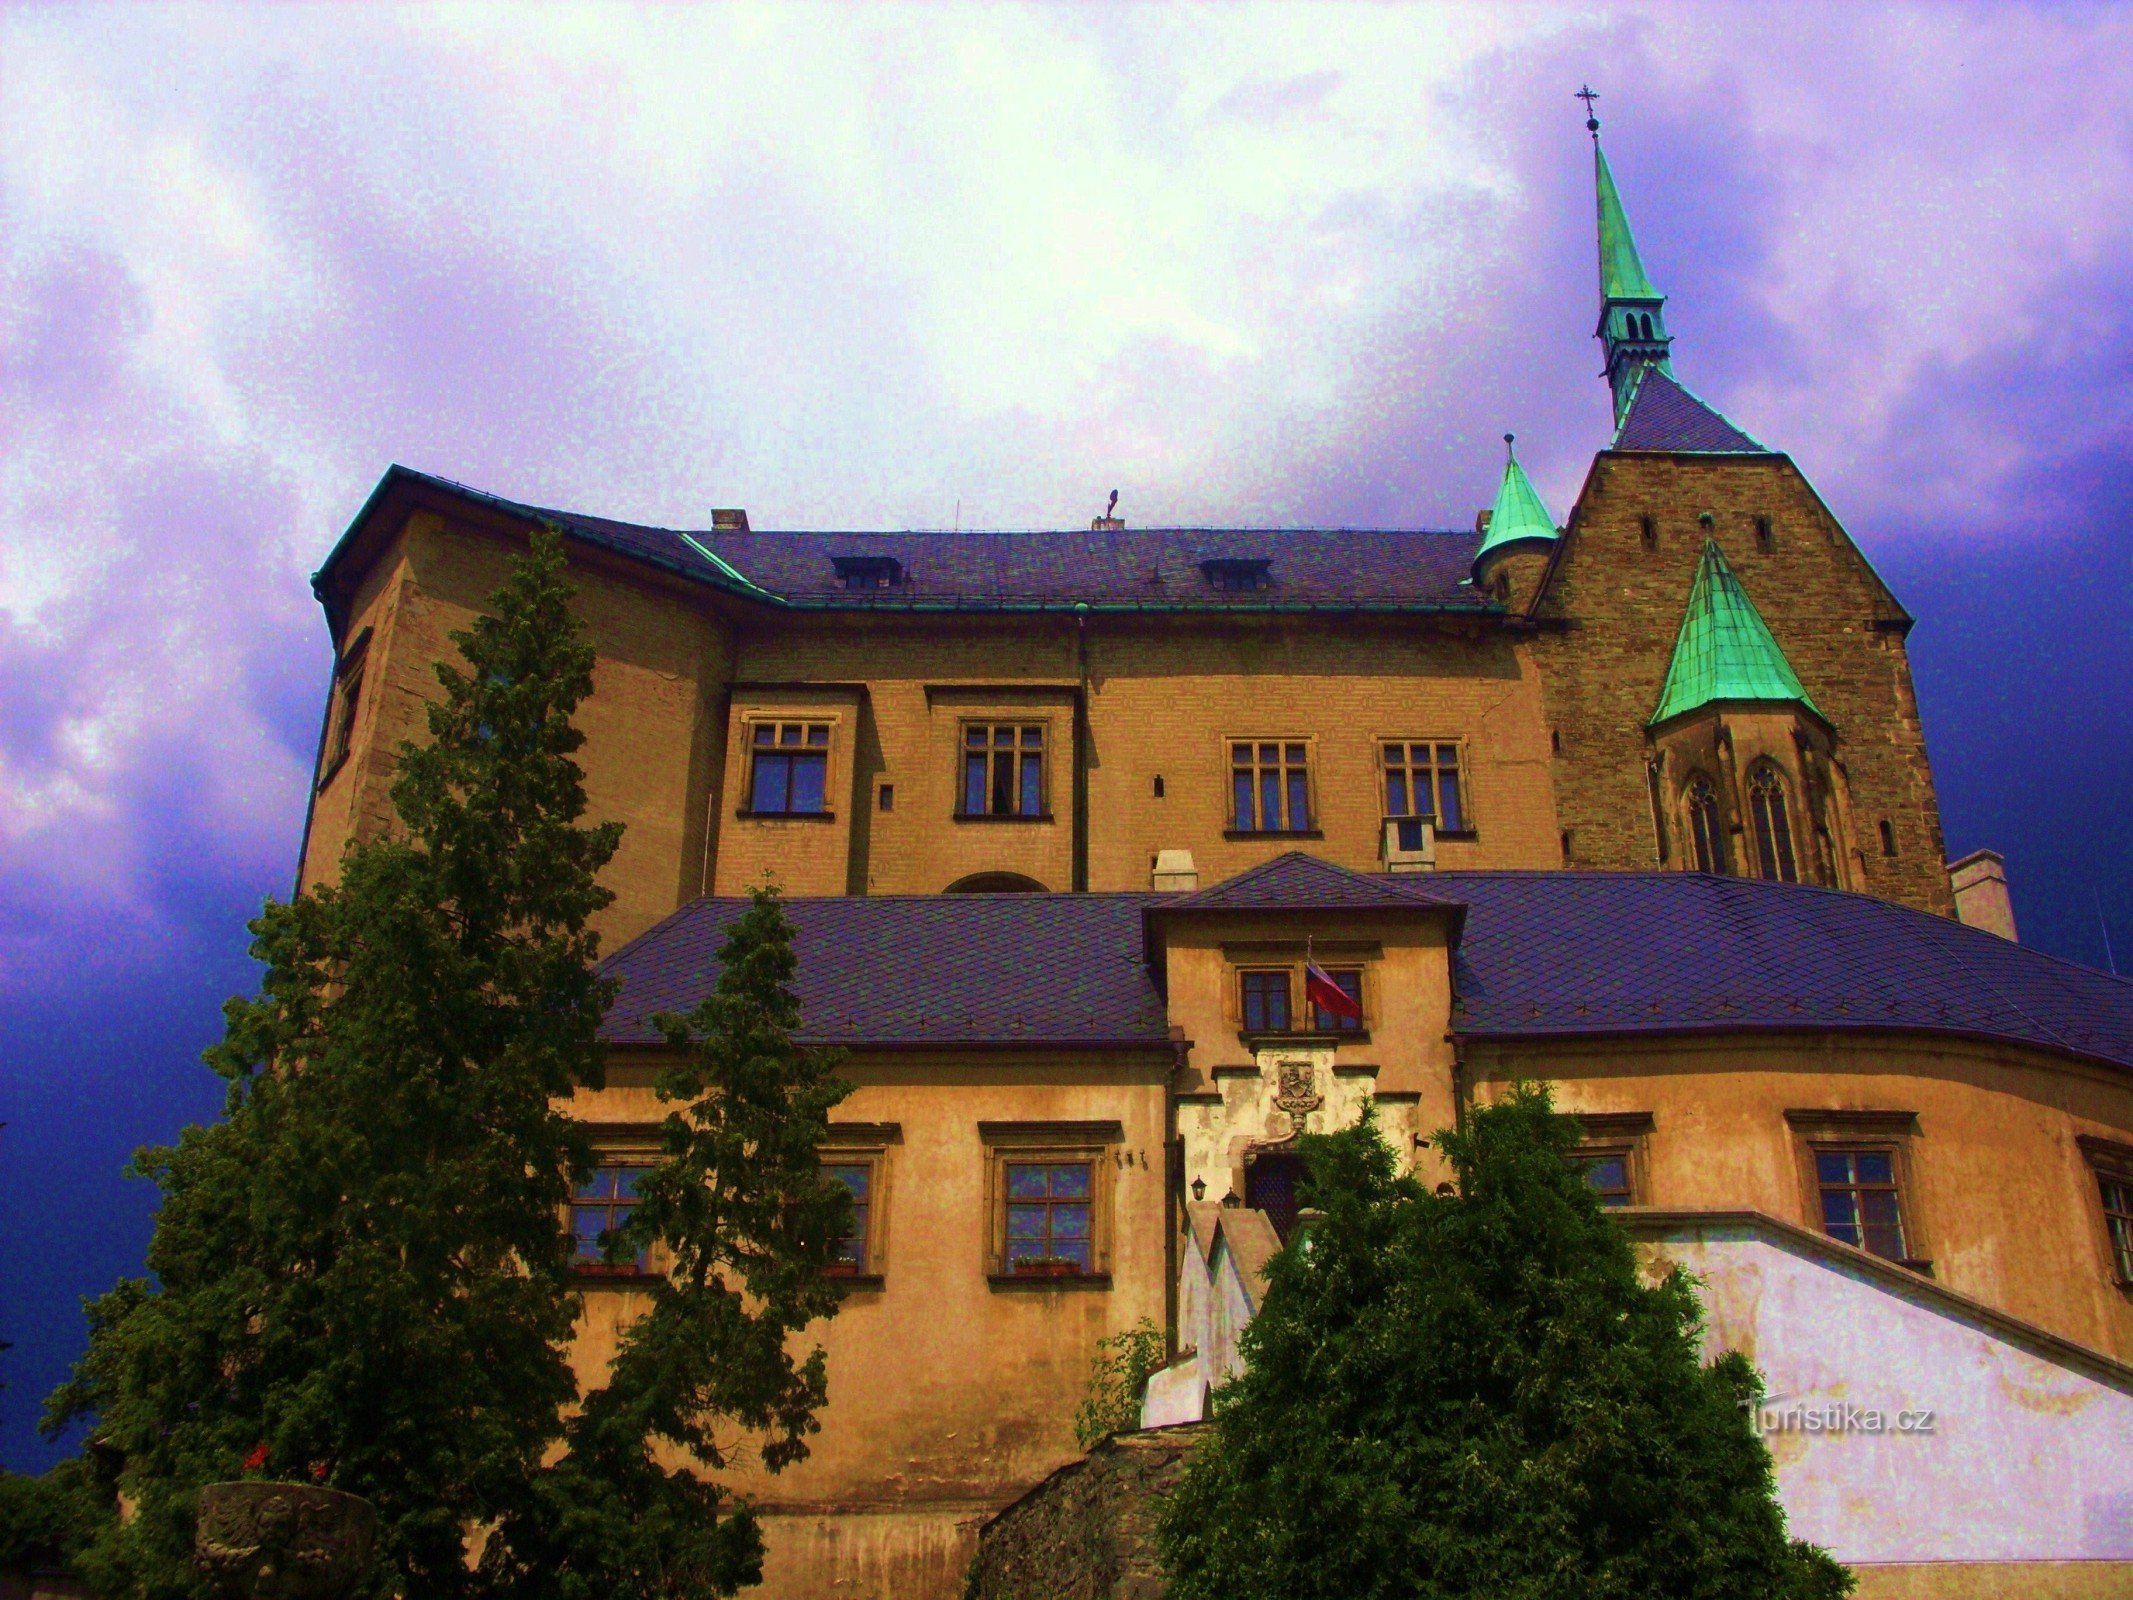 Stjärnan på kullen - Slottet Šternberk